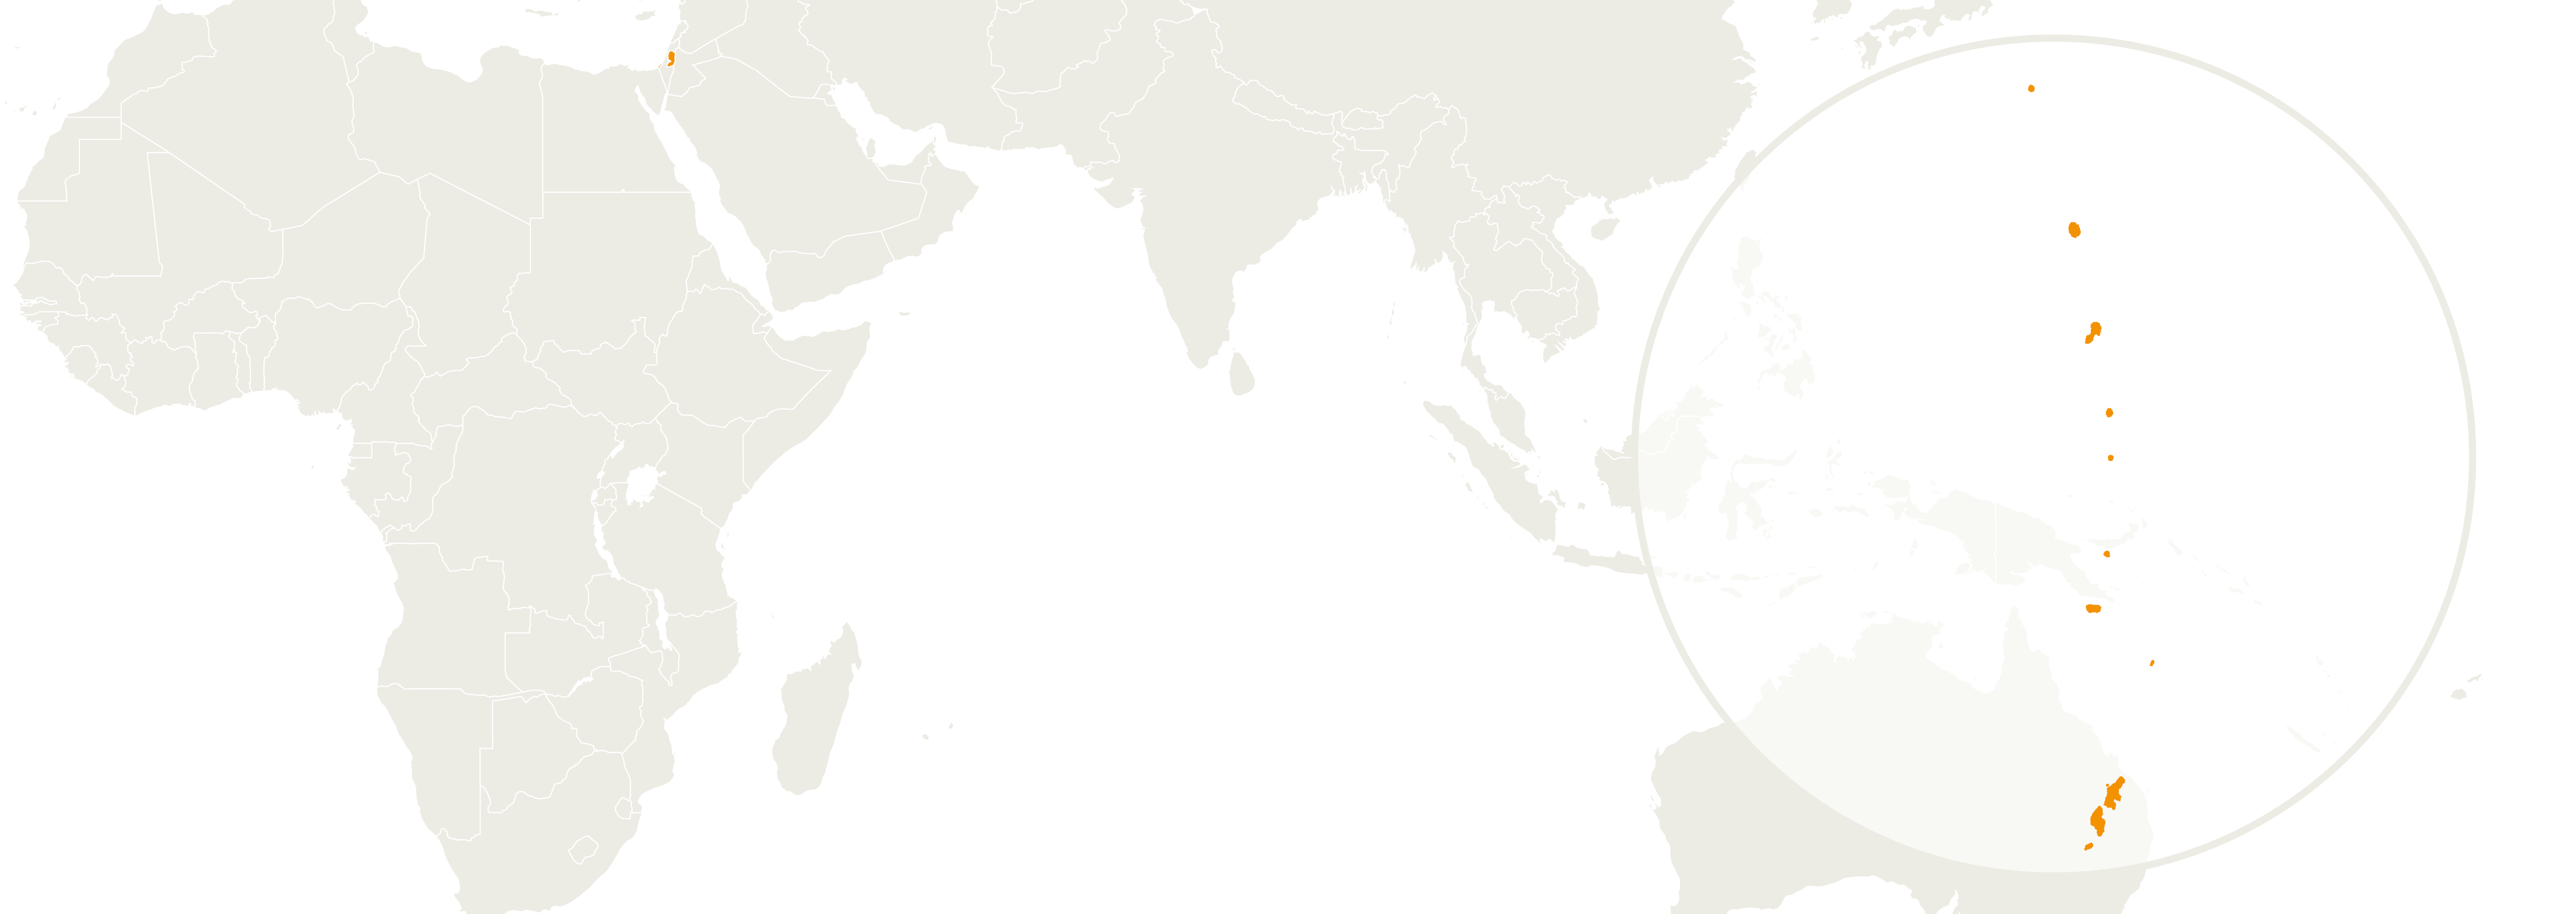 Map of Islas Marianas del Norte